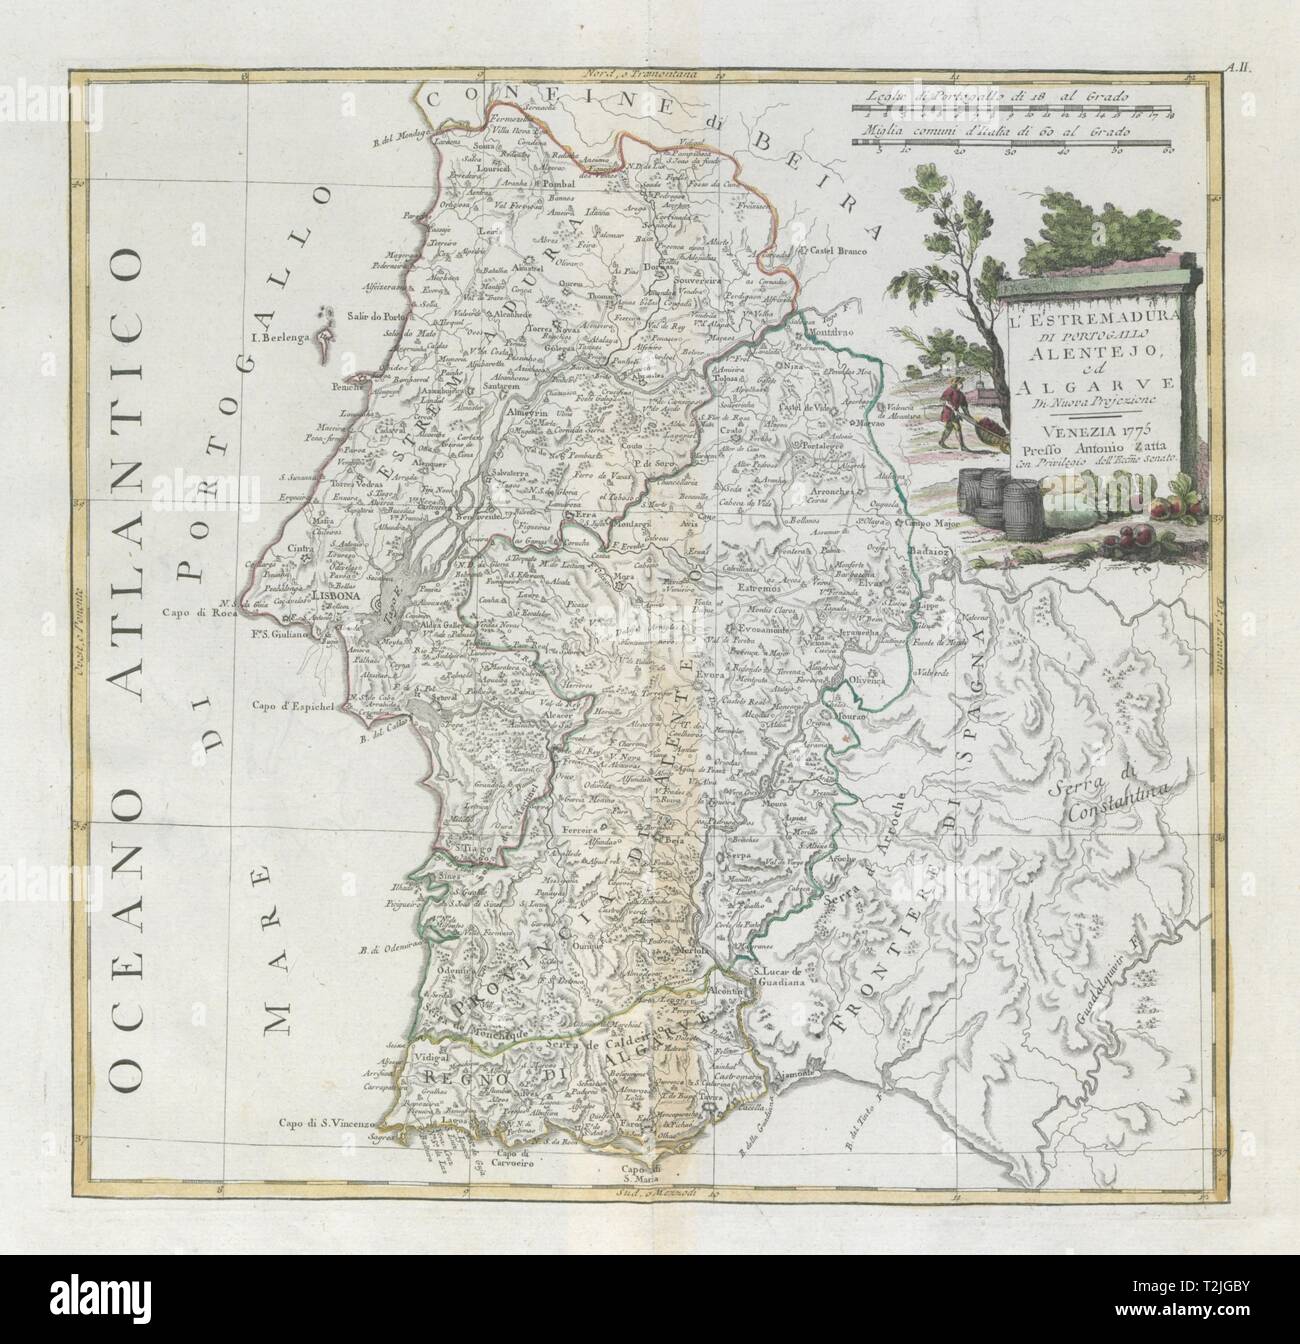 'L'Estremadura di Portogallo, Allentejo' Algarve, Portugal Sud. ZATTA 1779 map Banque D'Images